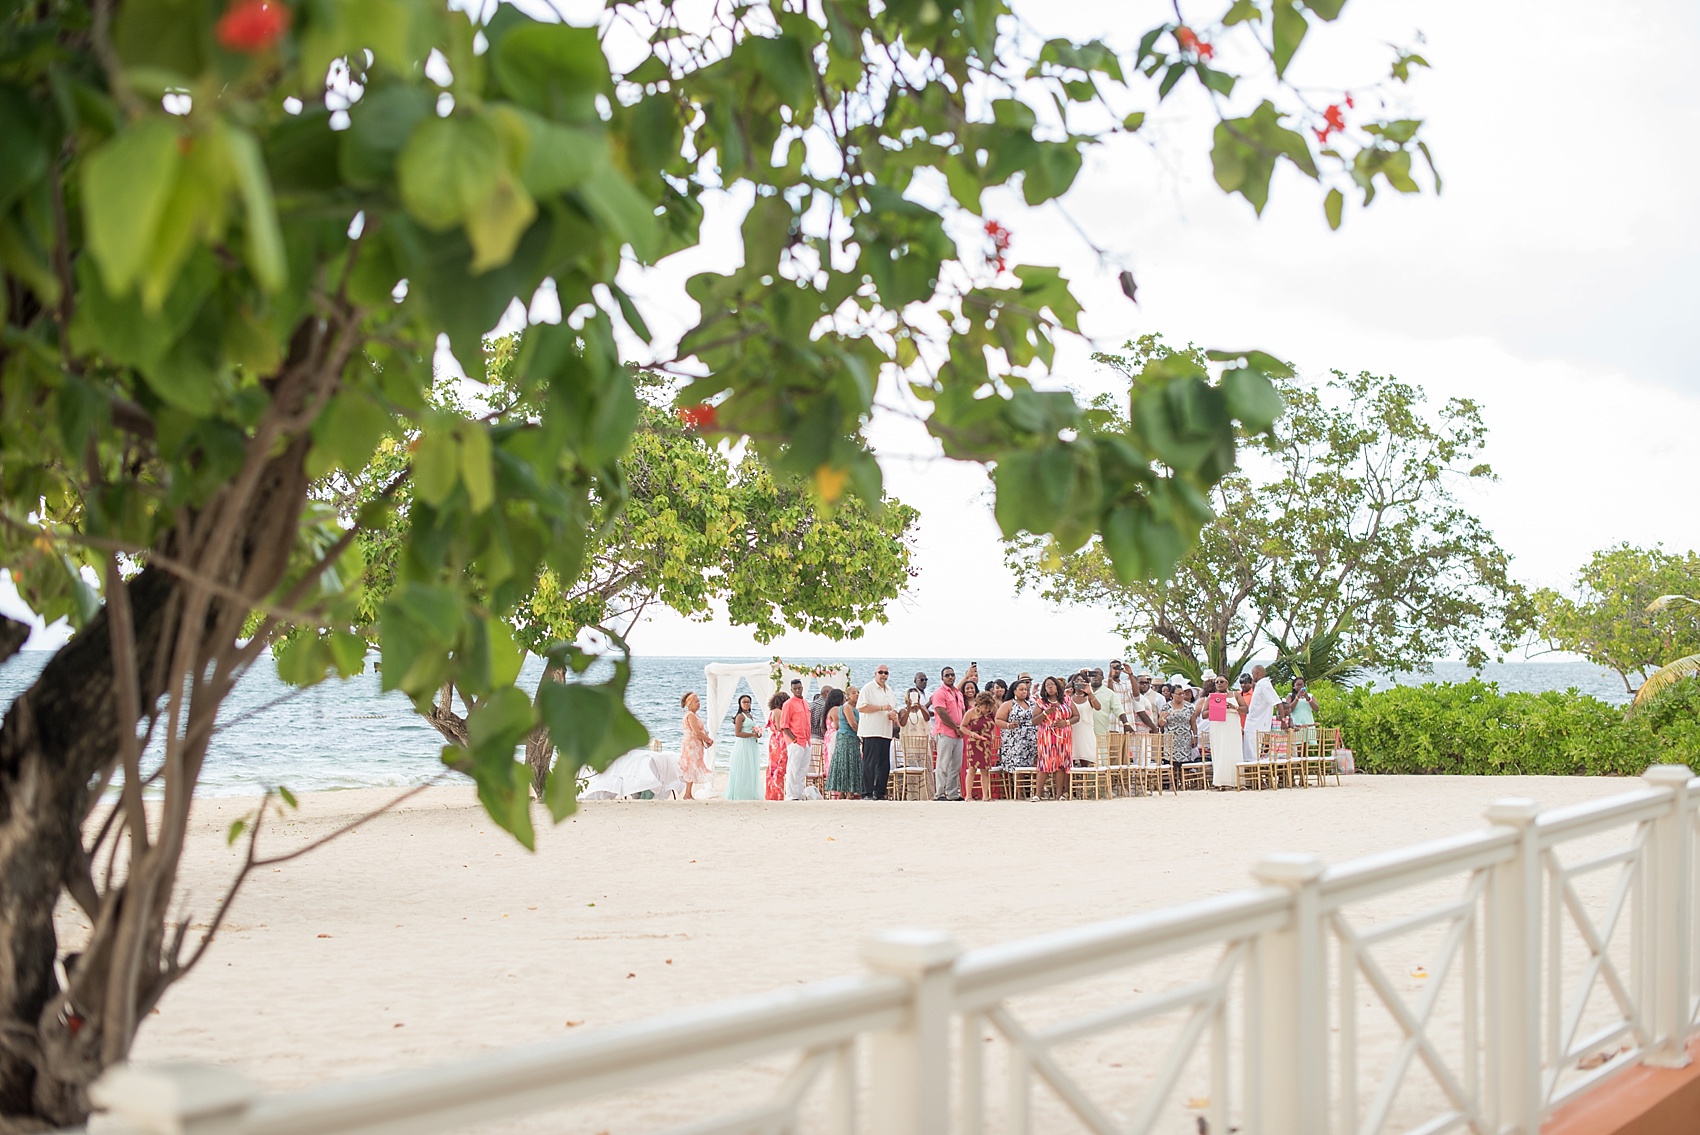 Iberostar Jamaica wedding ceremony photos. Images by Mikkel Paige Photography.